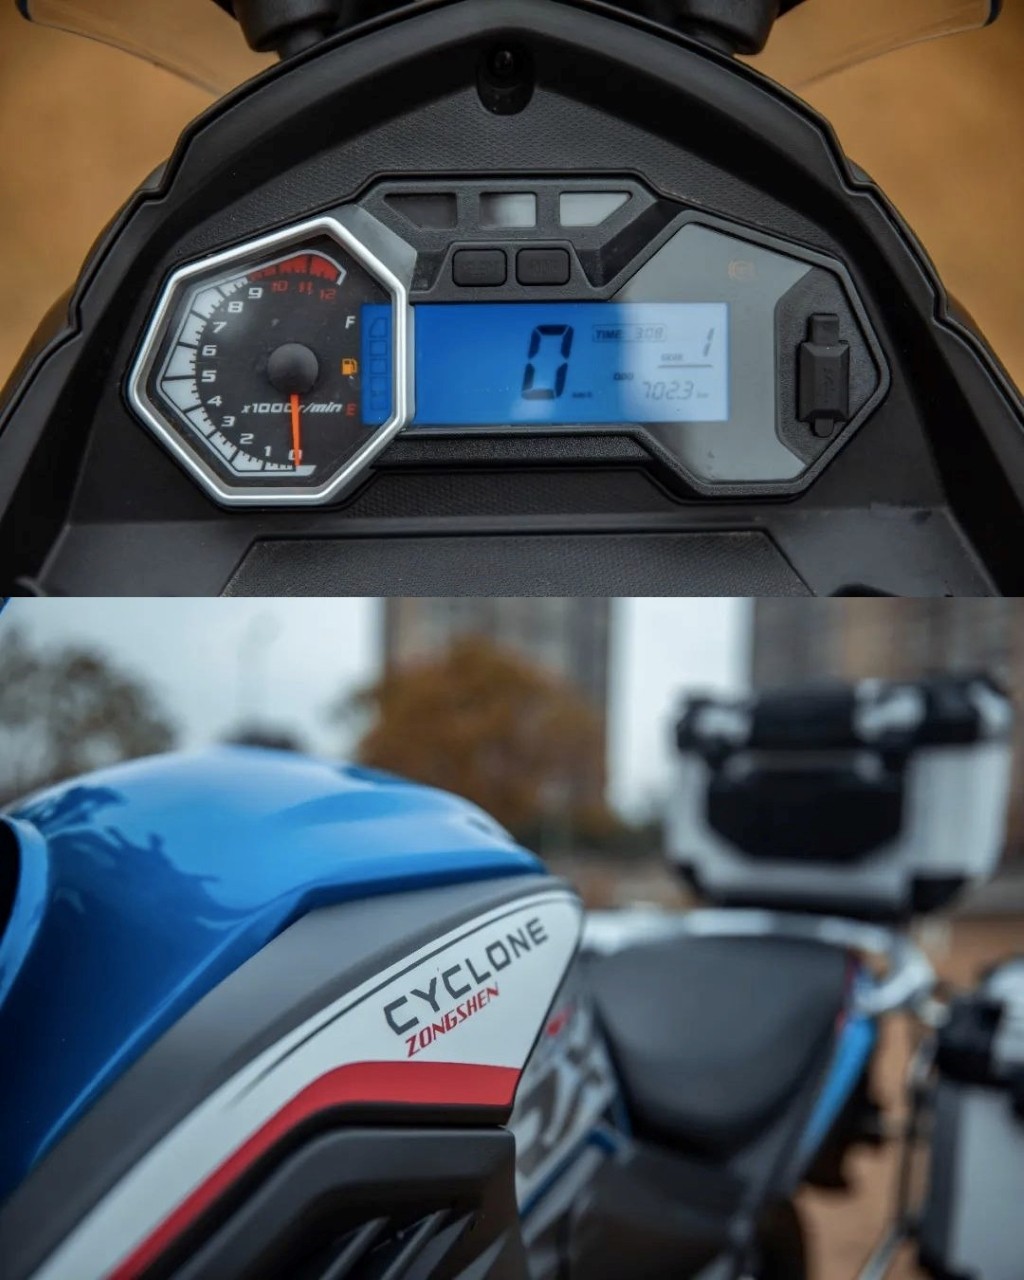 “Xế phượt” Zongshen RX1S - Lựa chọn mới trong phân khúc adventure giá rẻ, cạnh tranh trực tiếp với Honda CB190X ảnh 5